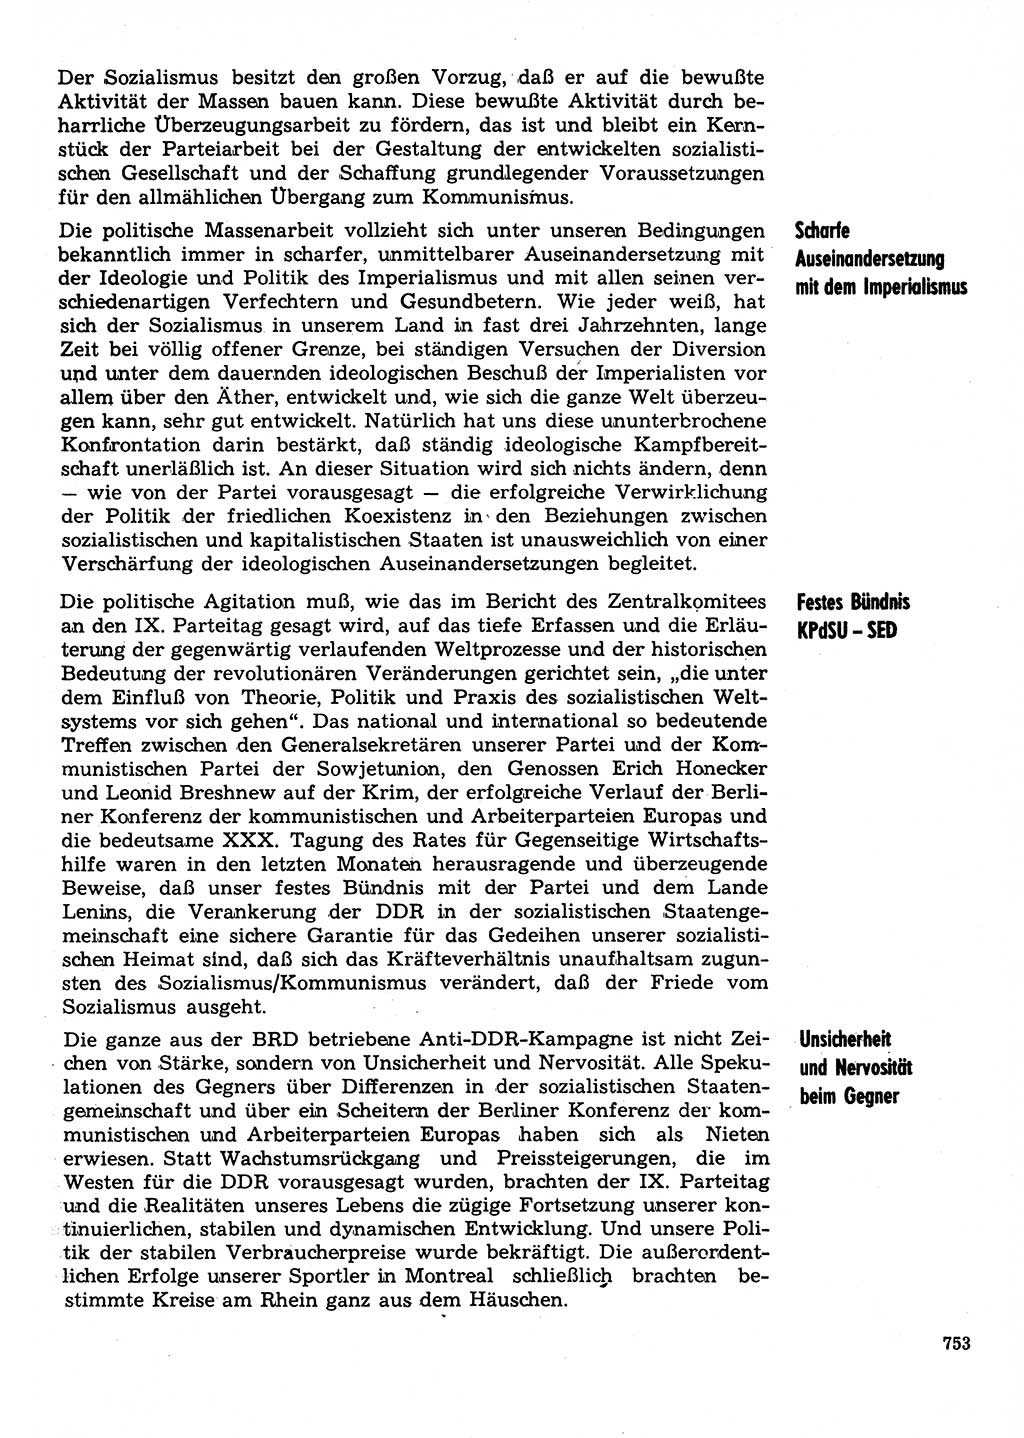 Neuer Weg (NW), Organ des Zentralkomitees (ZK) der SED (Sozialistische Einheitspartei Deutschlands) für Fragen des Parteilebens, 31. Jahrgang [Deutsche Demokratische Republik (DDR)] 1976, Seite 753 (NW ZK SED DDR 1976, S. 753)